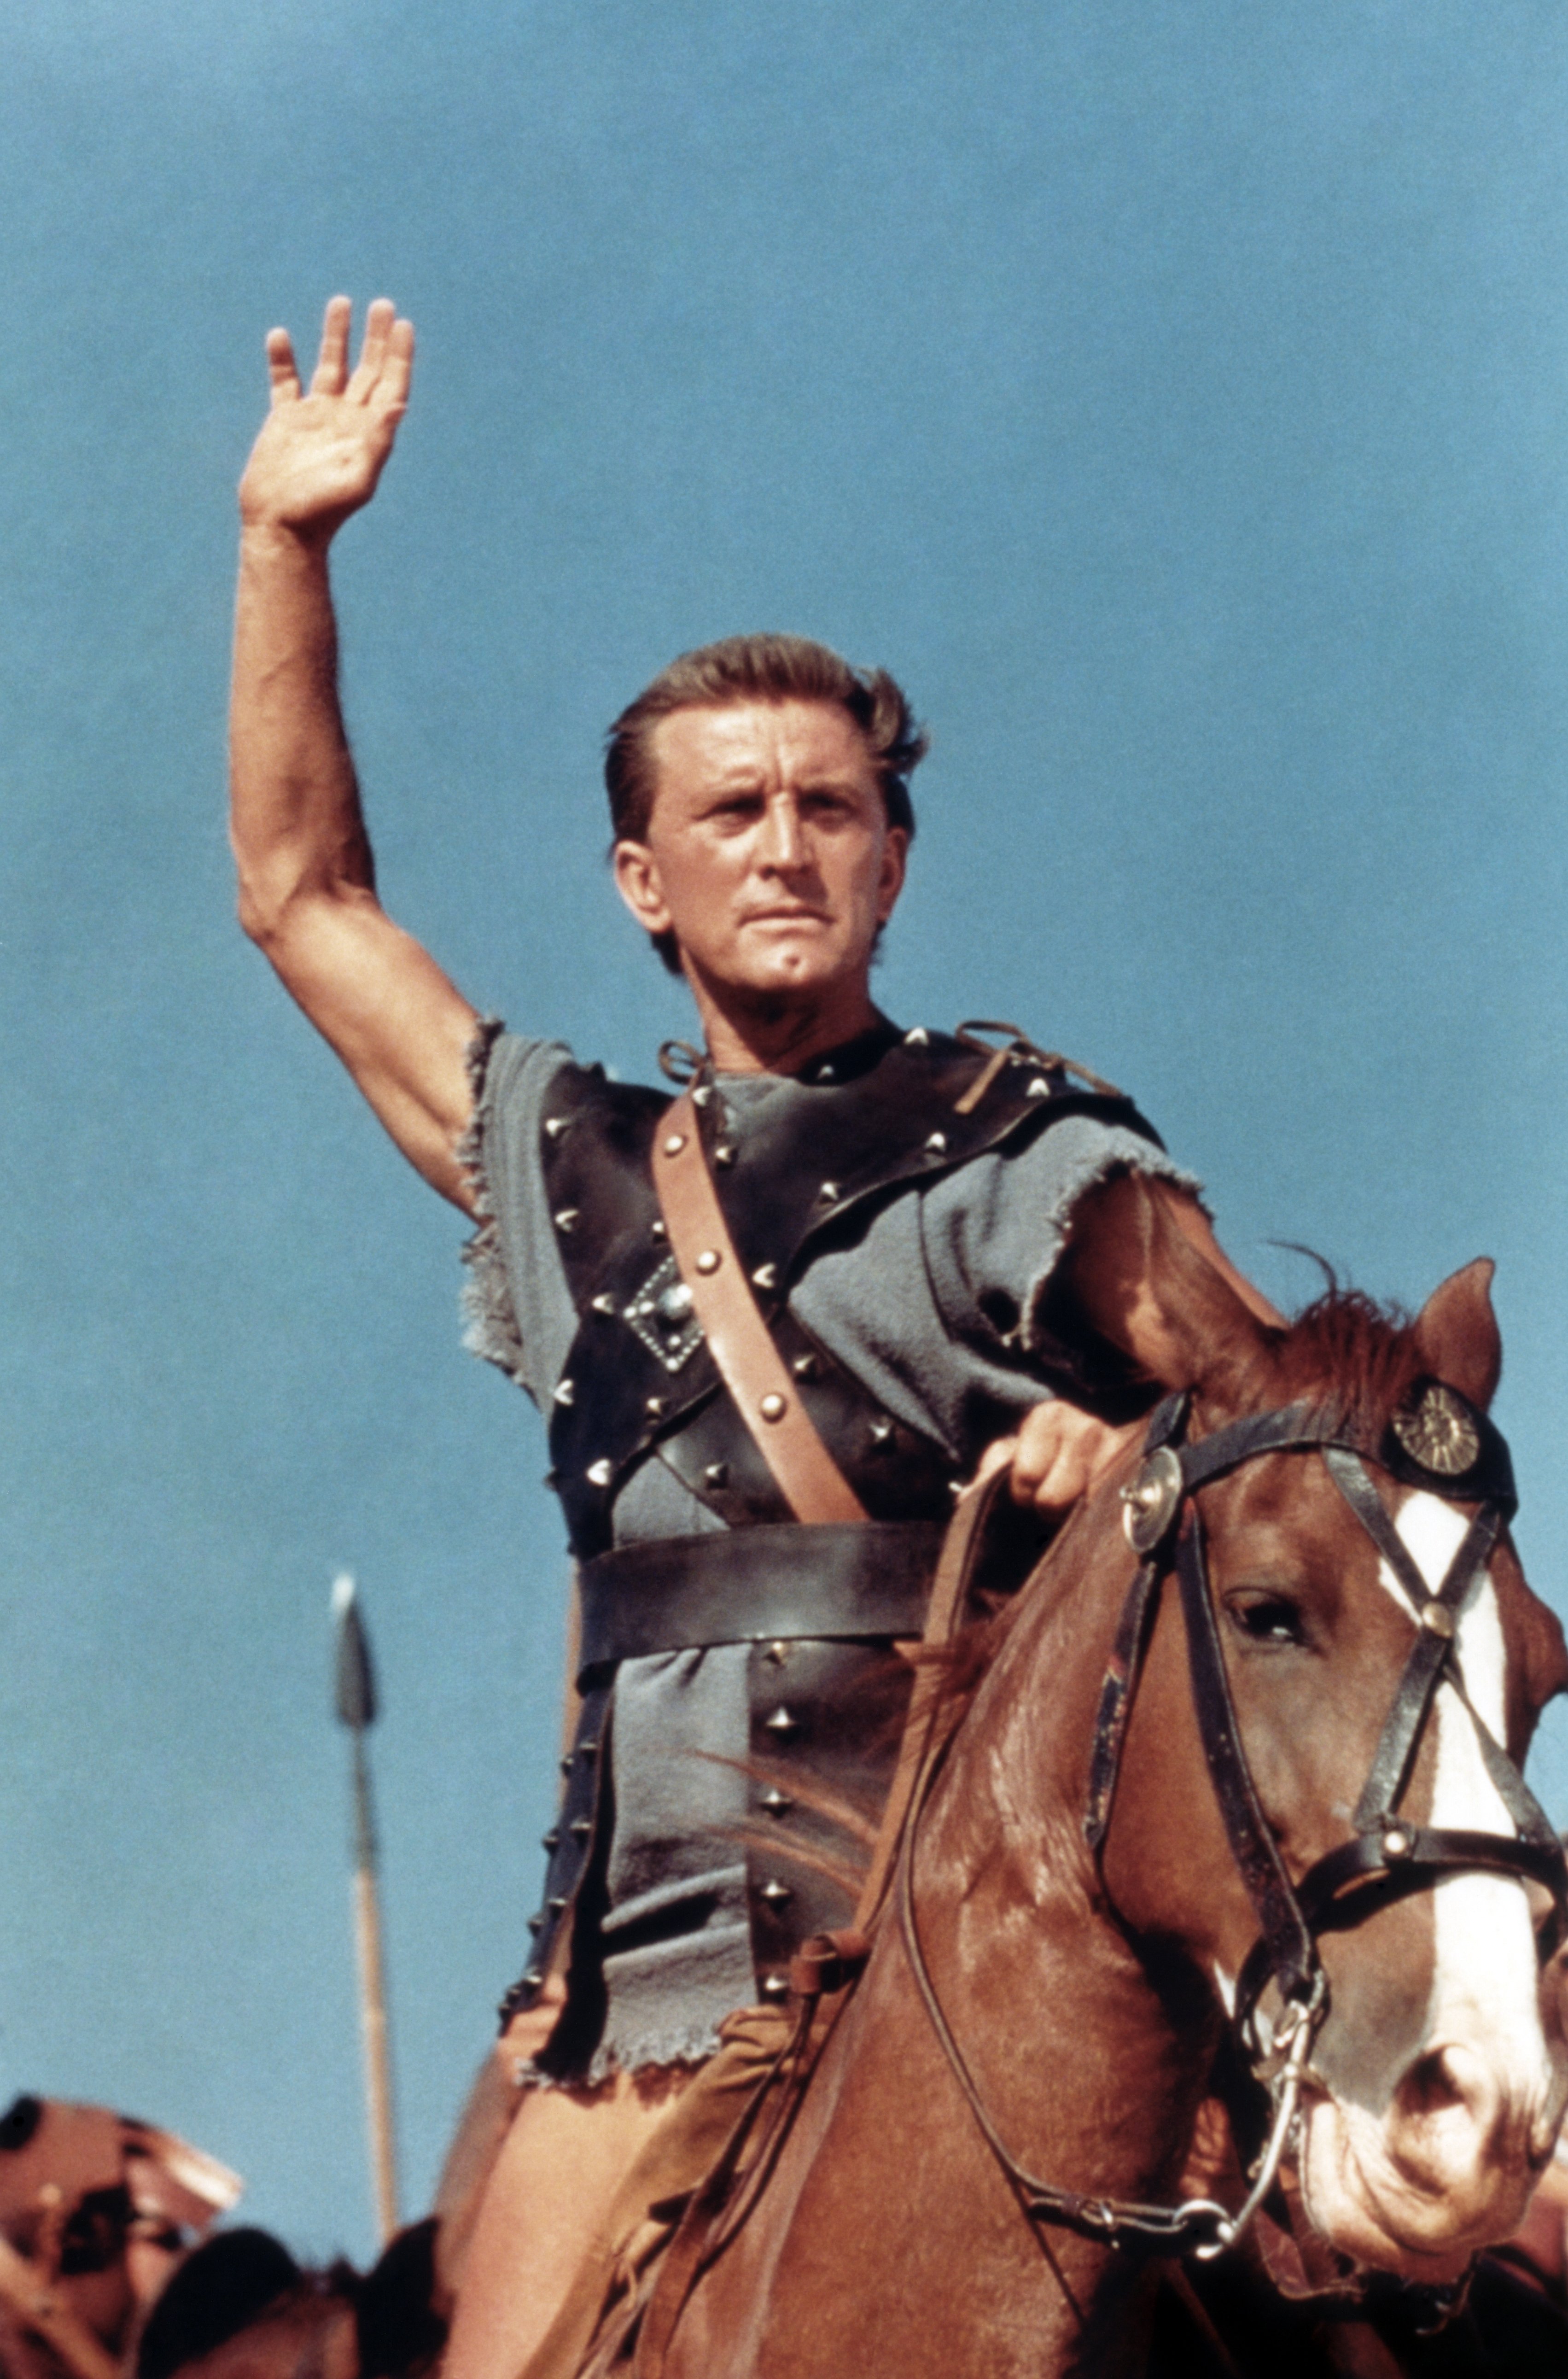 Kirk Douglas dans le film d'action "Spartacus" de 1960, photographié sur un cheval, la main levée en l'air. / Source : Getty Images